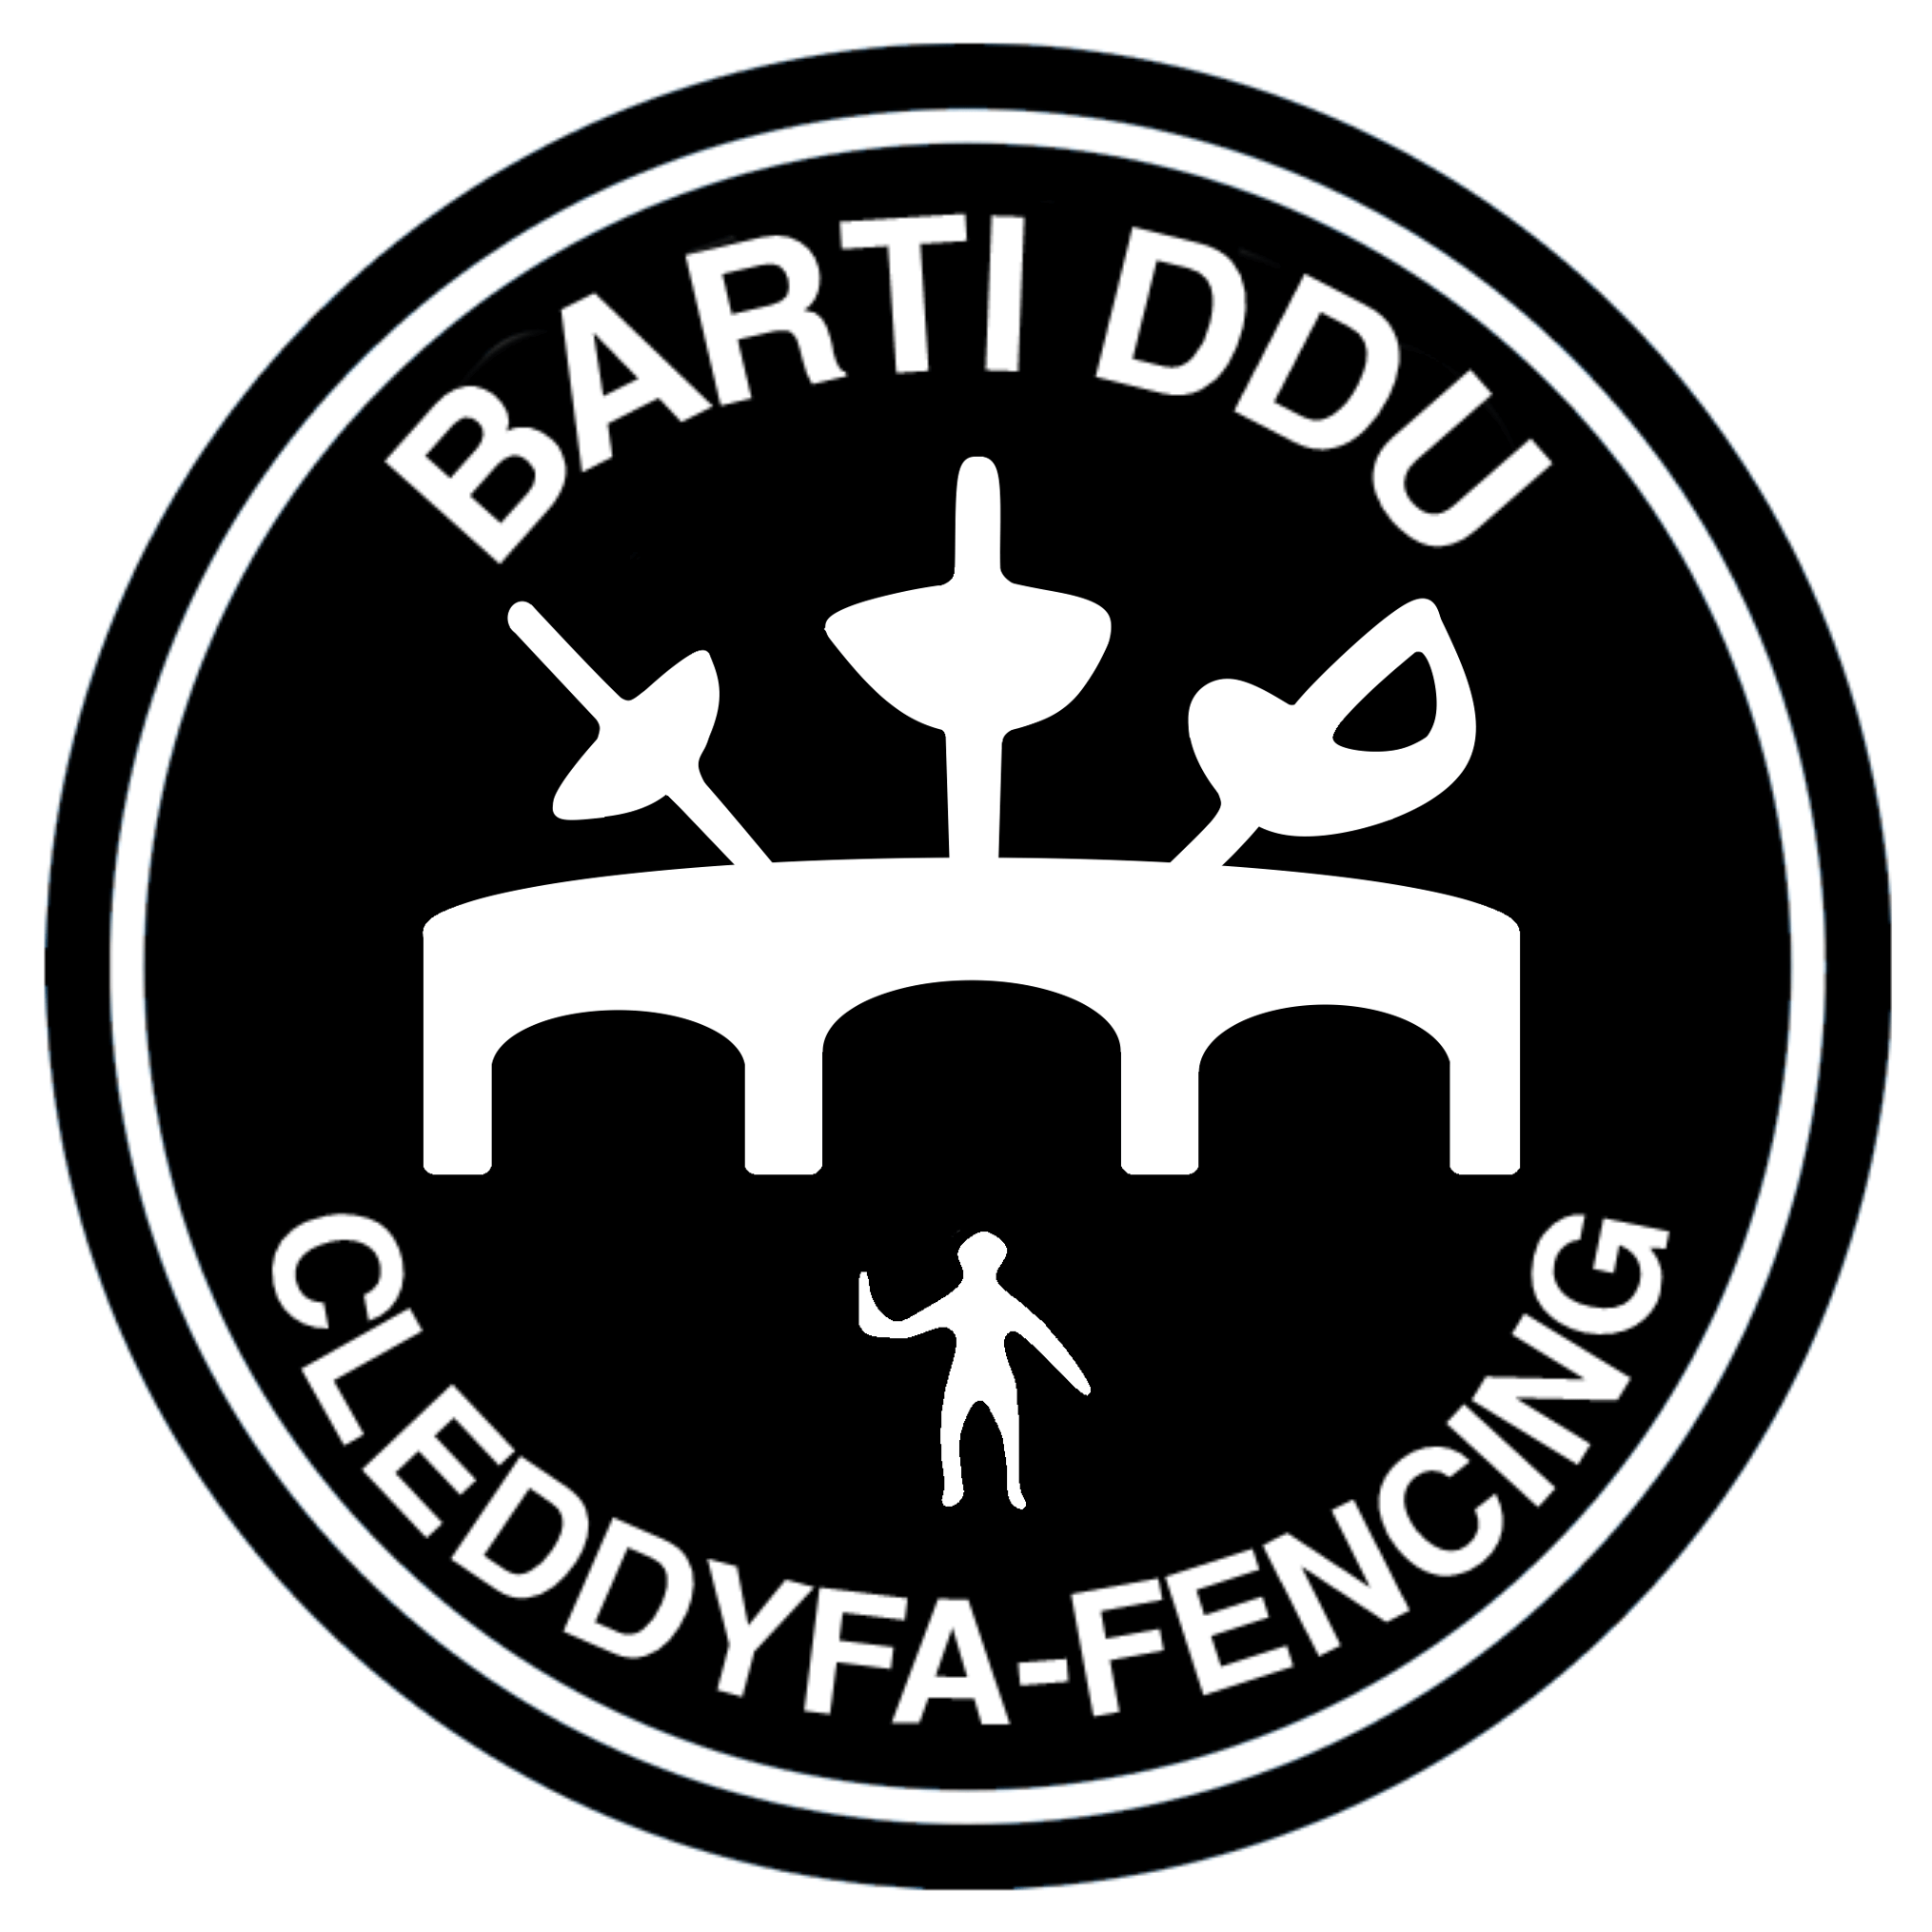 Barti ddu fencing logo